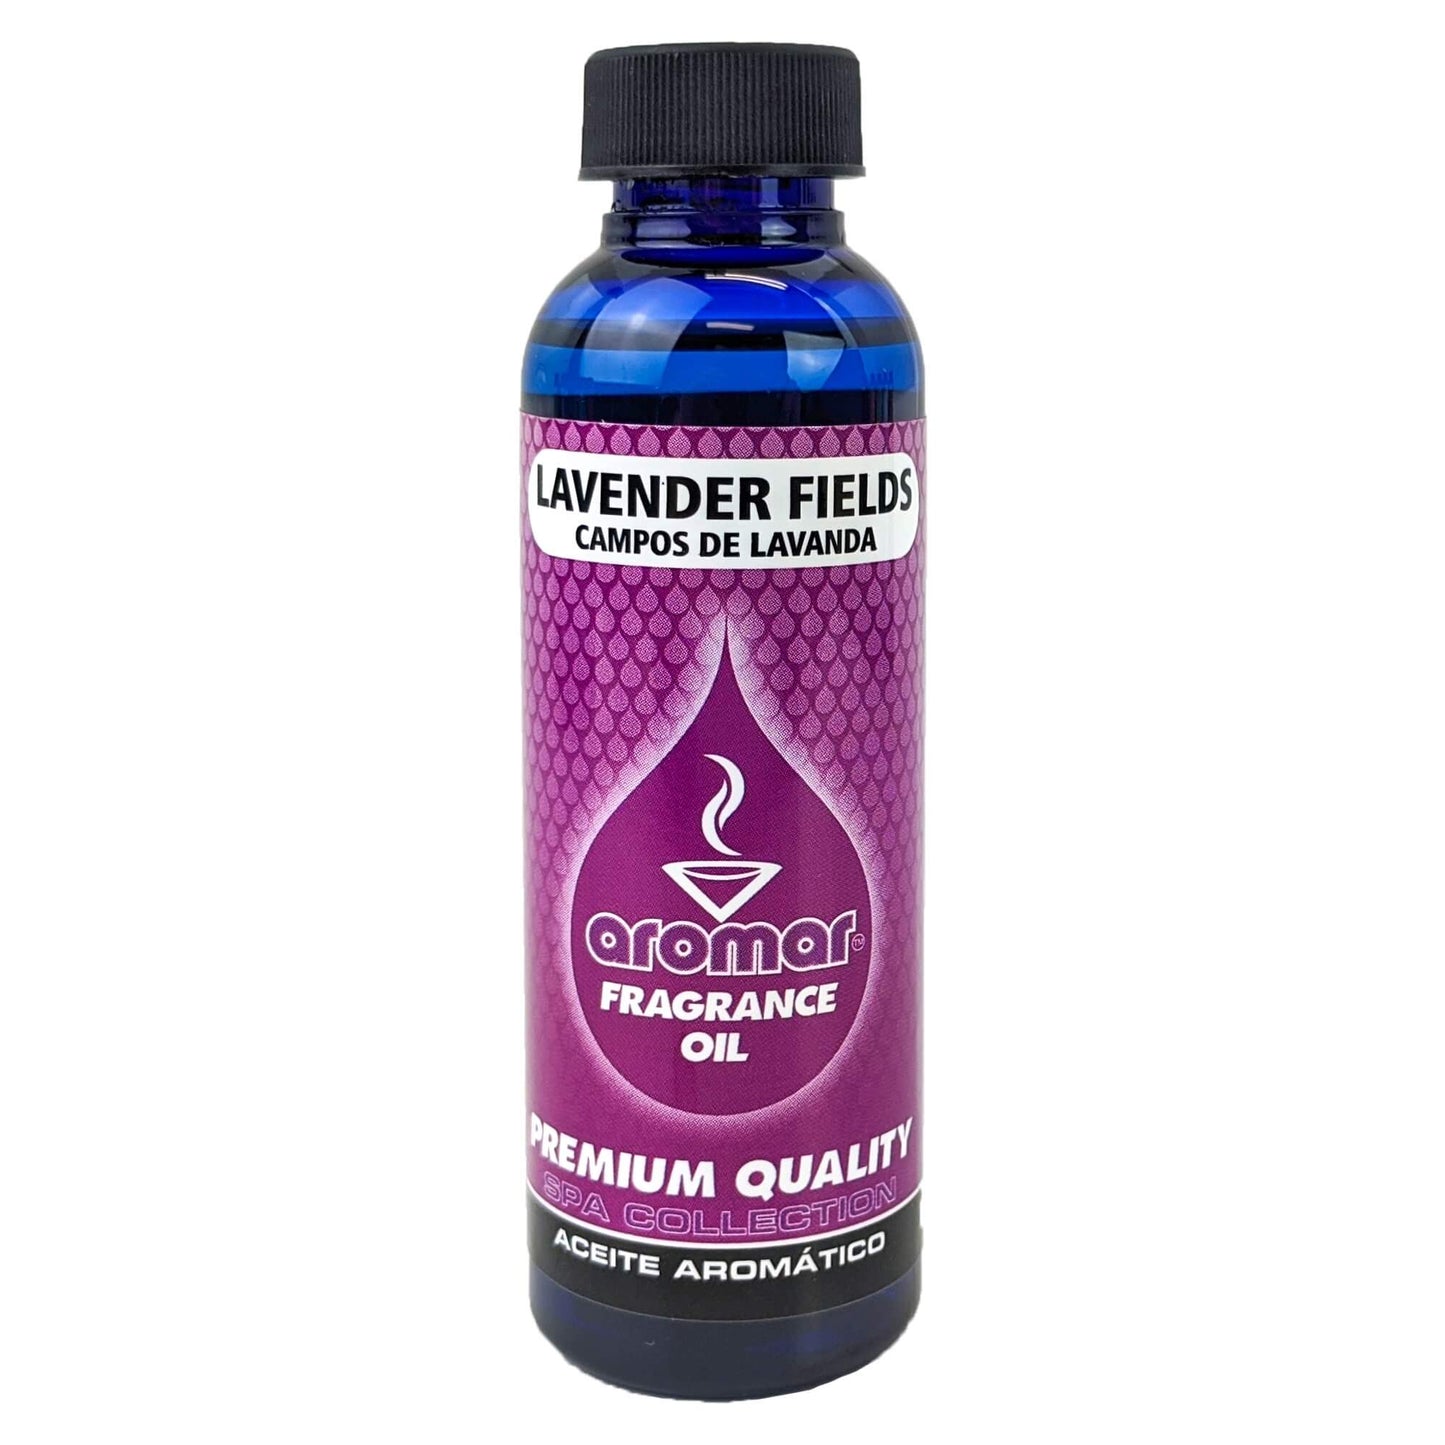 Lavender Fields Scent Aromar Fragrance Oil, 2oz/60ml